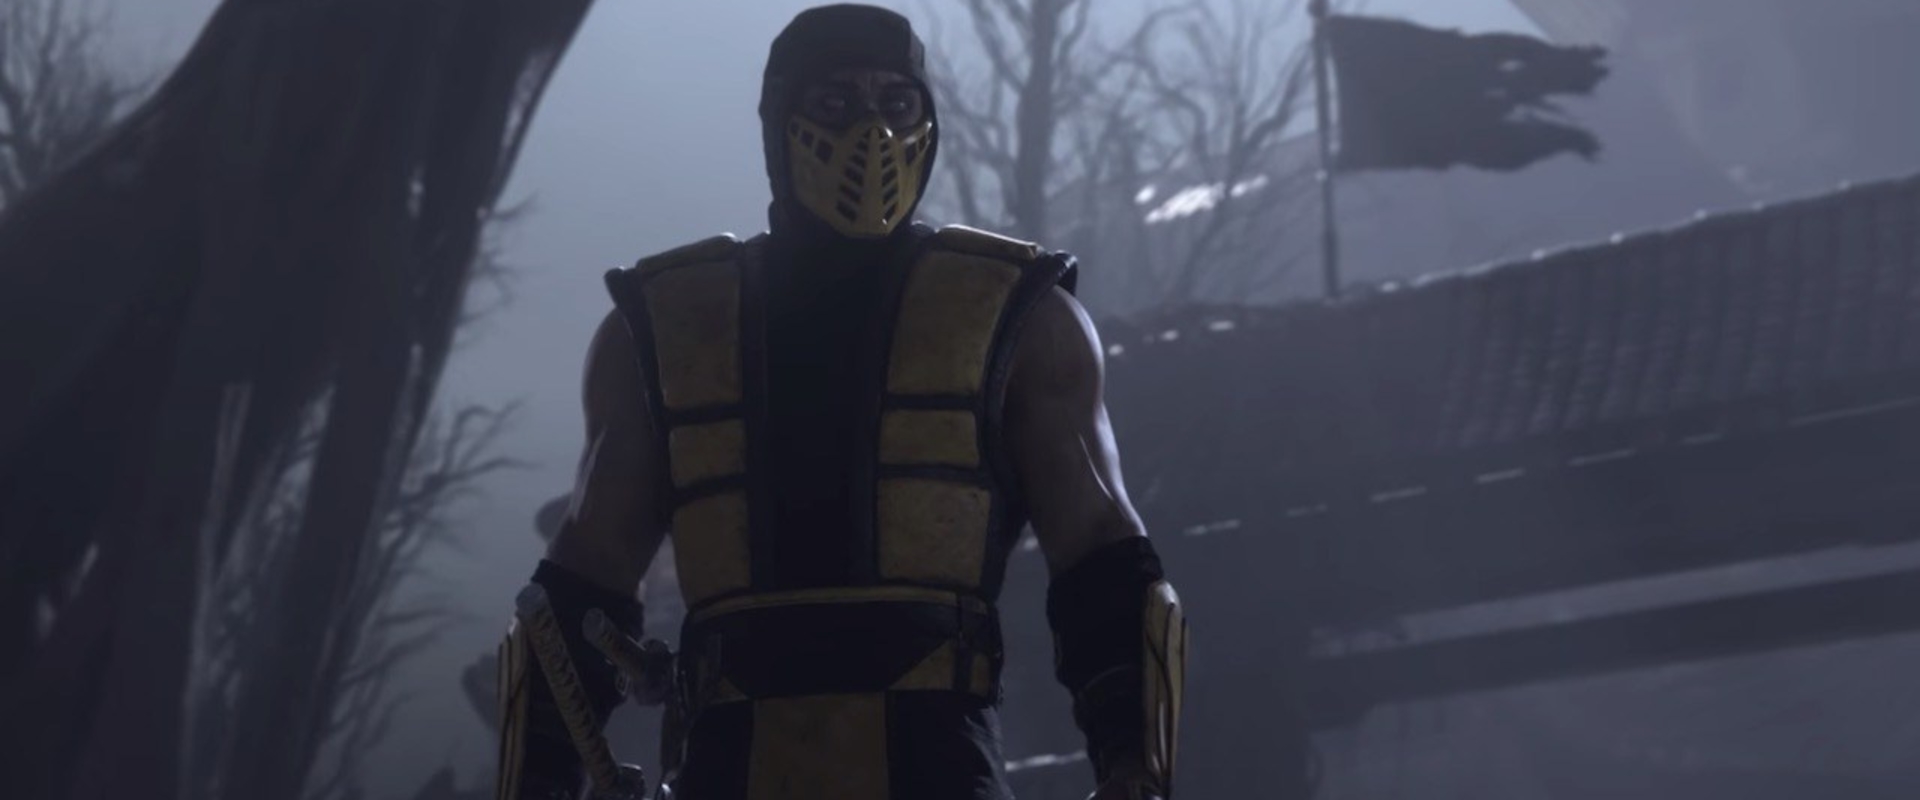 Áprilisban jön az eddigi legbrutálisabb Mortal Kombat - videó